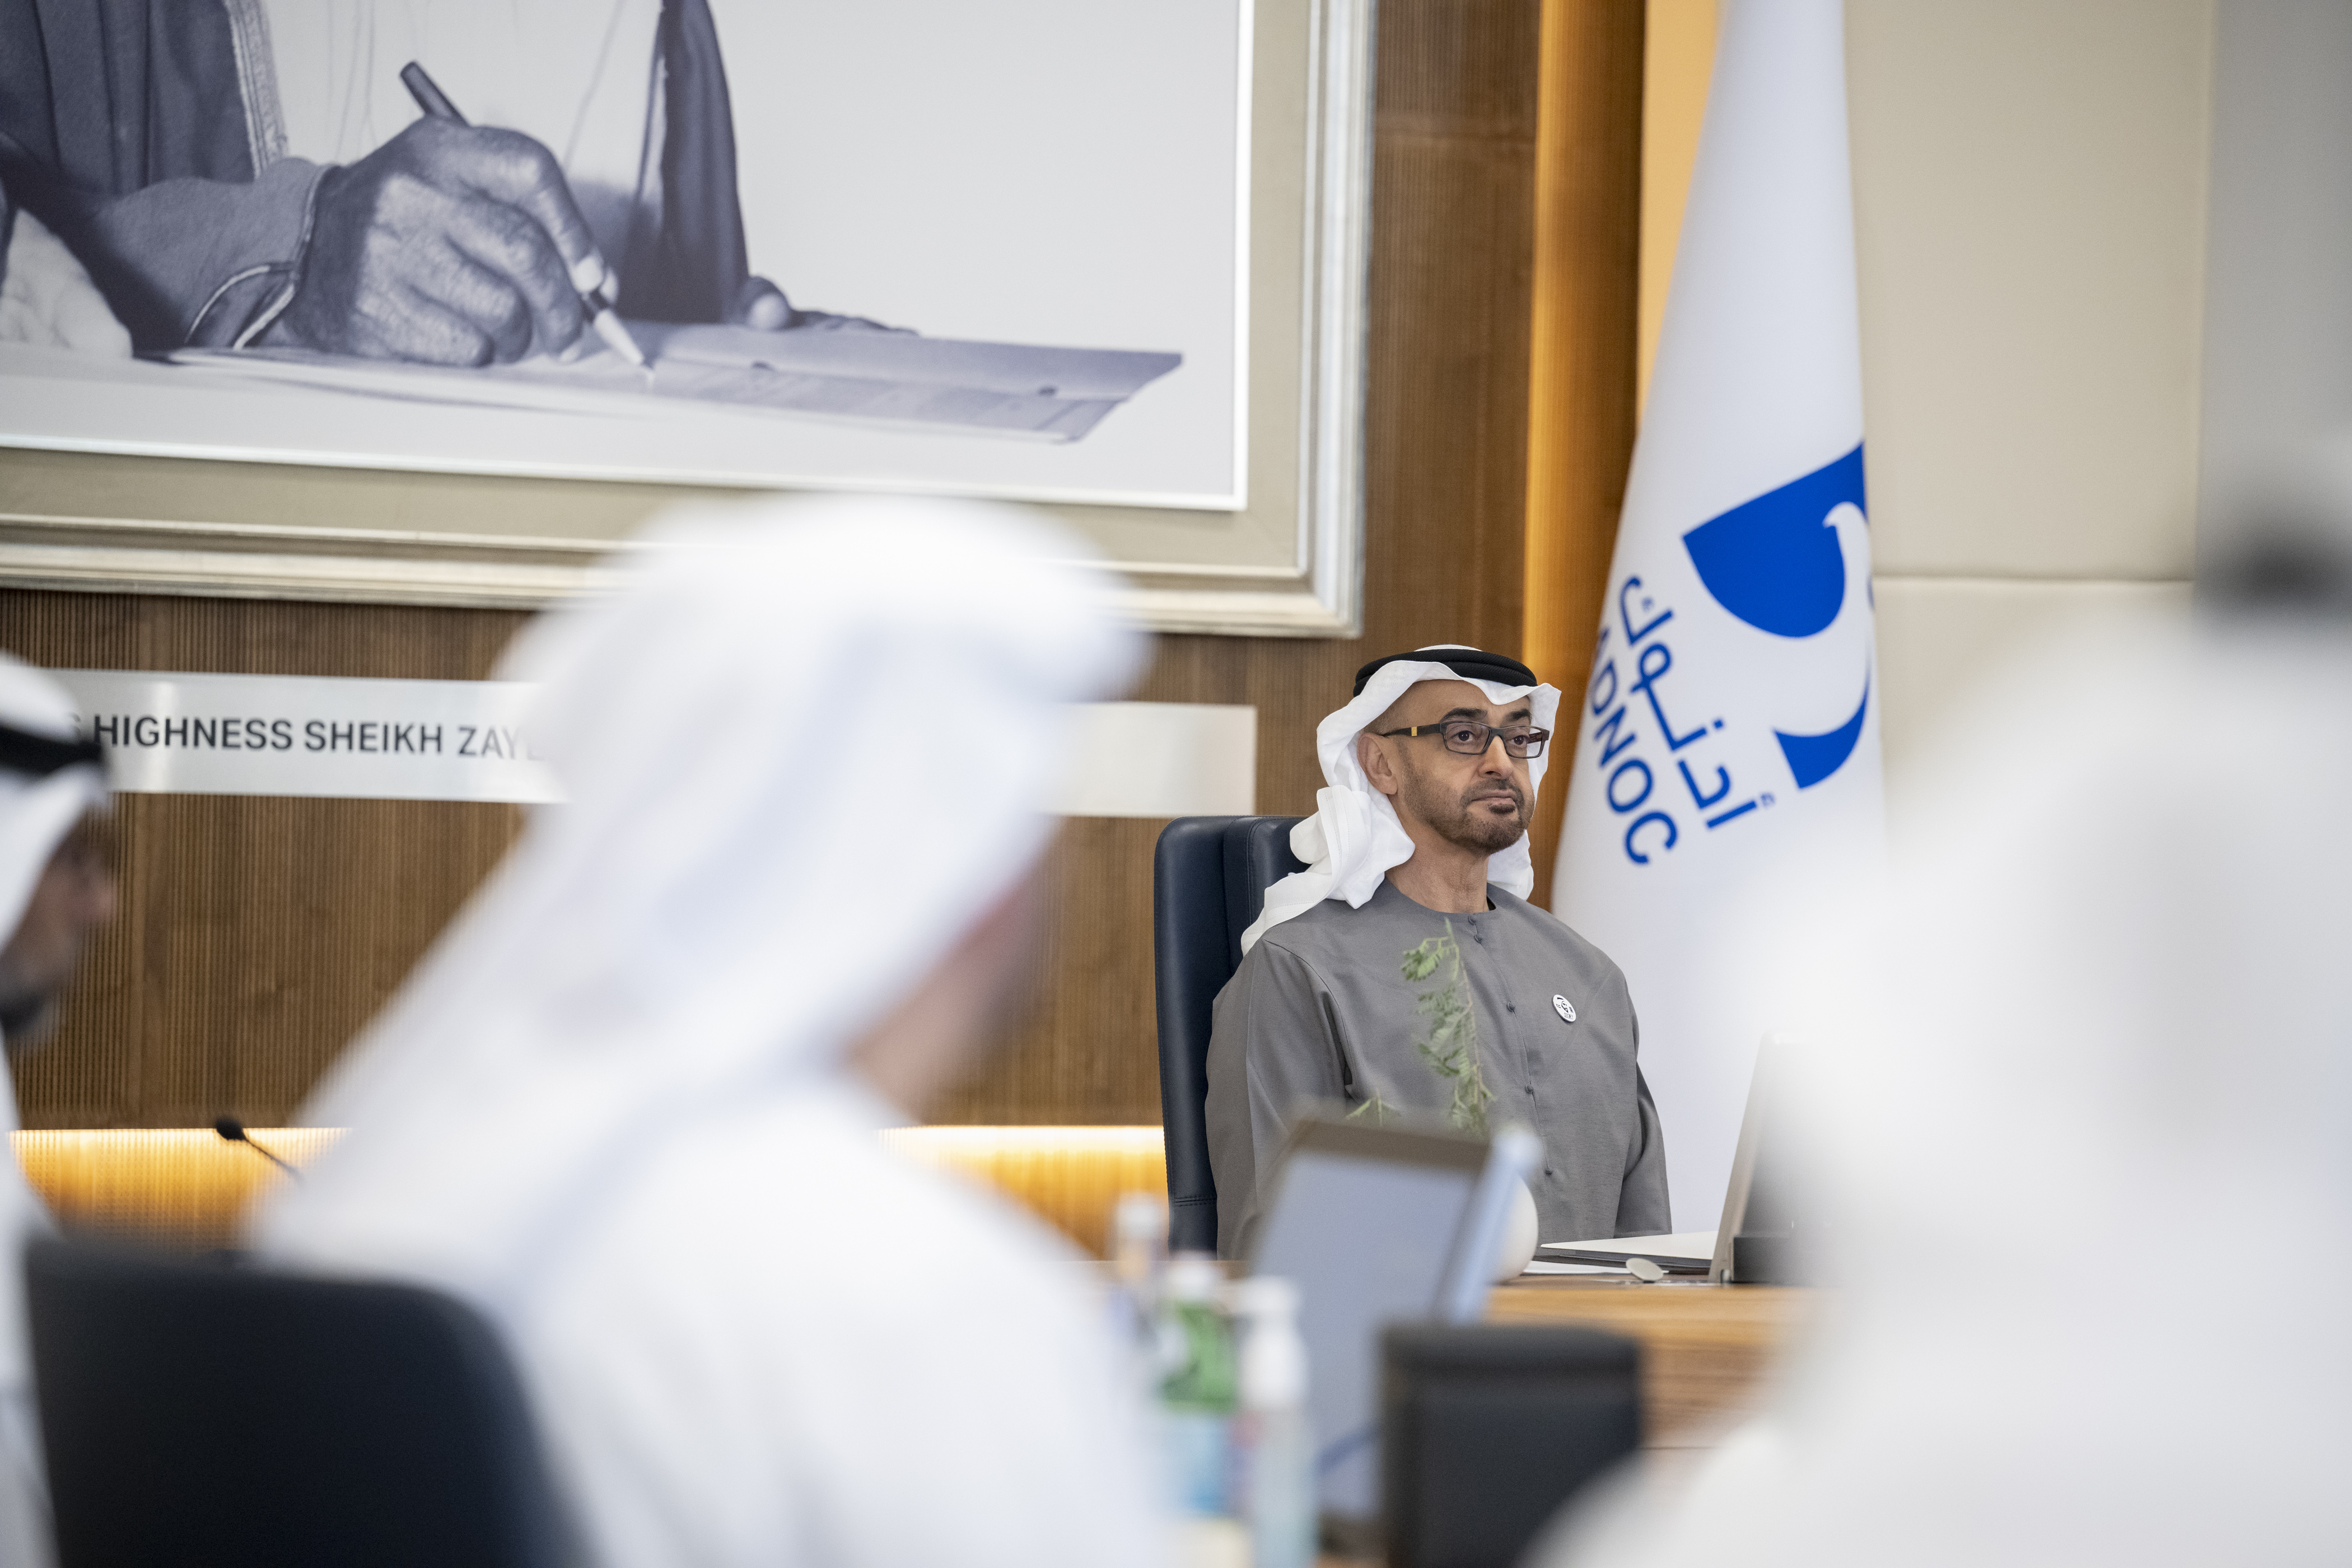 خلال ترؤس سموه اجتماع مجلس إدارة "أدنوك".. رئيس الدولة يؤكد أن الإمارات مستمرة في دورها الرائد مساهماً في ضمان أمن الطاقة العالمي واستدامة إمداداتها.